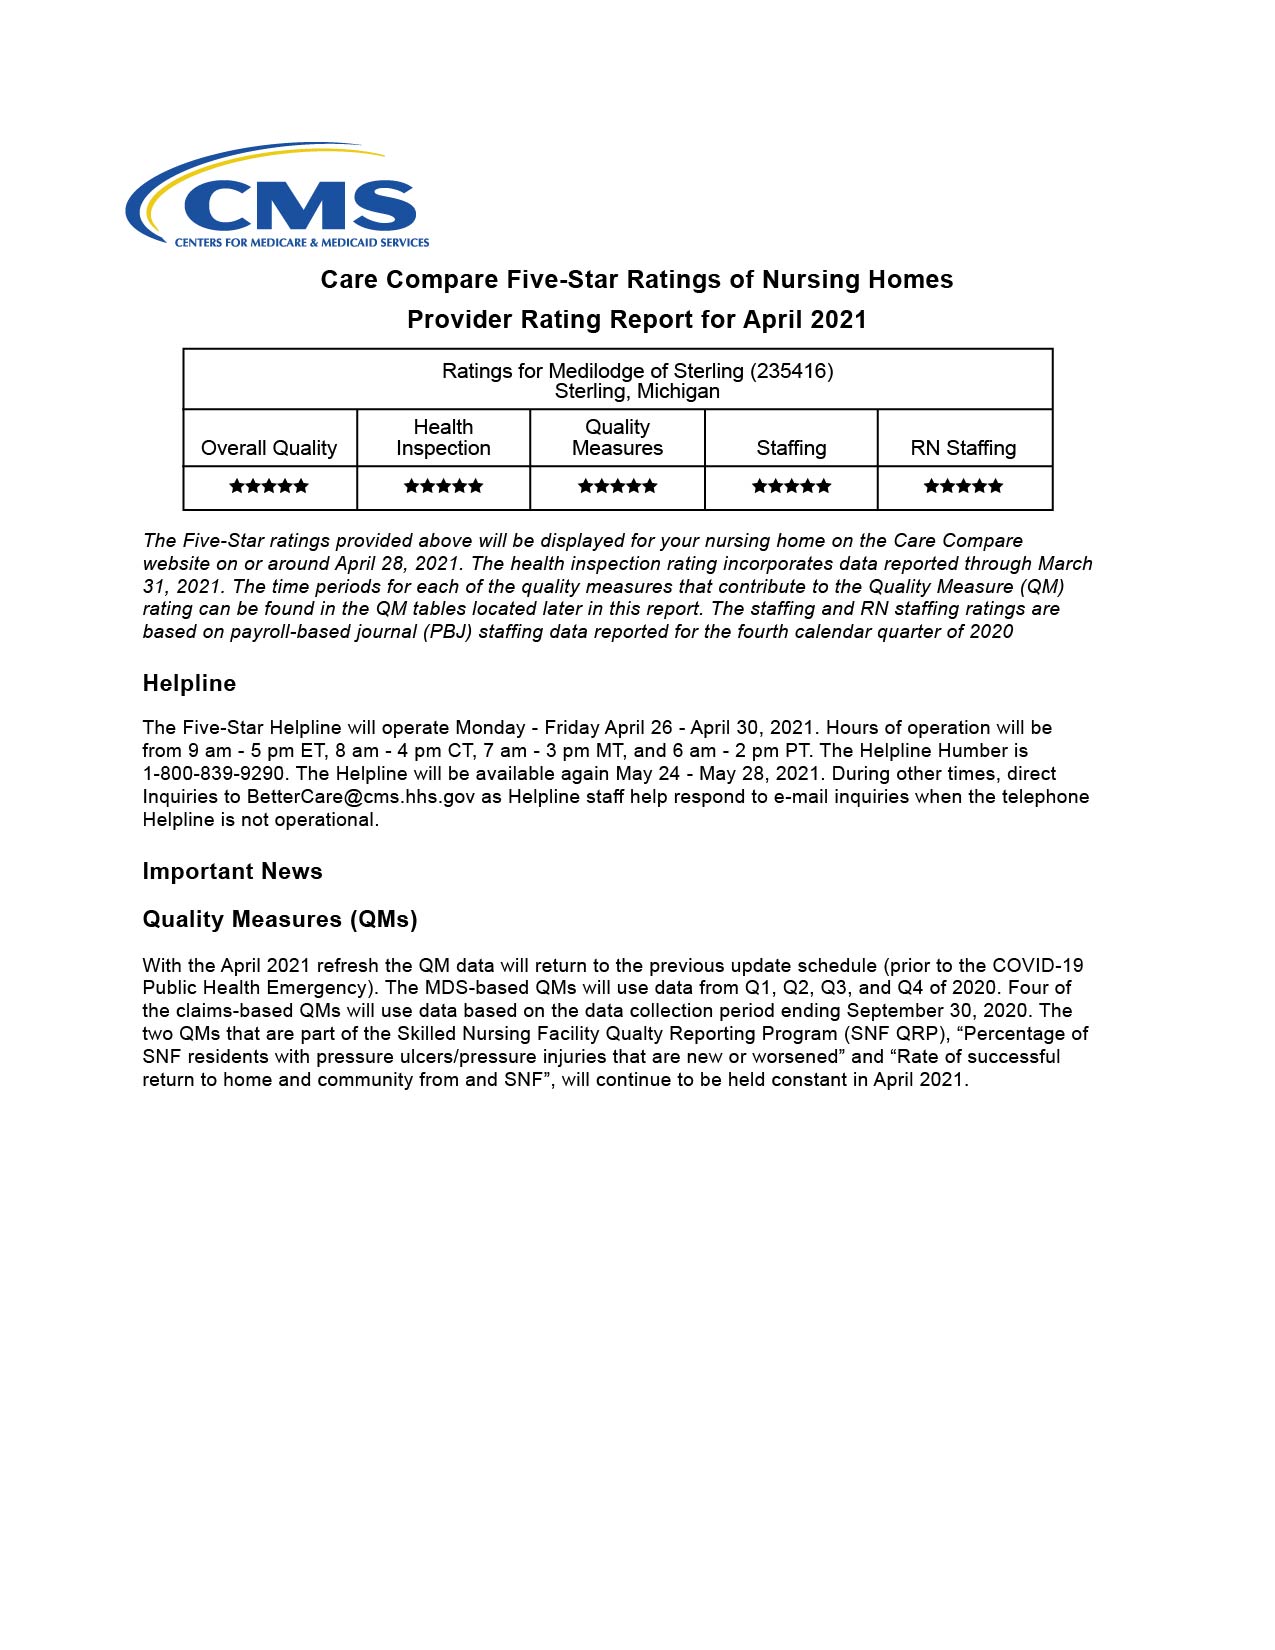 Medilodge of Sterling CMS report April 2021-01